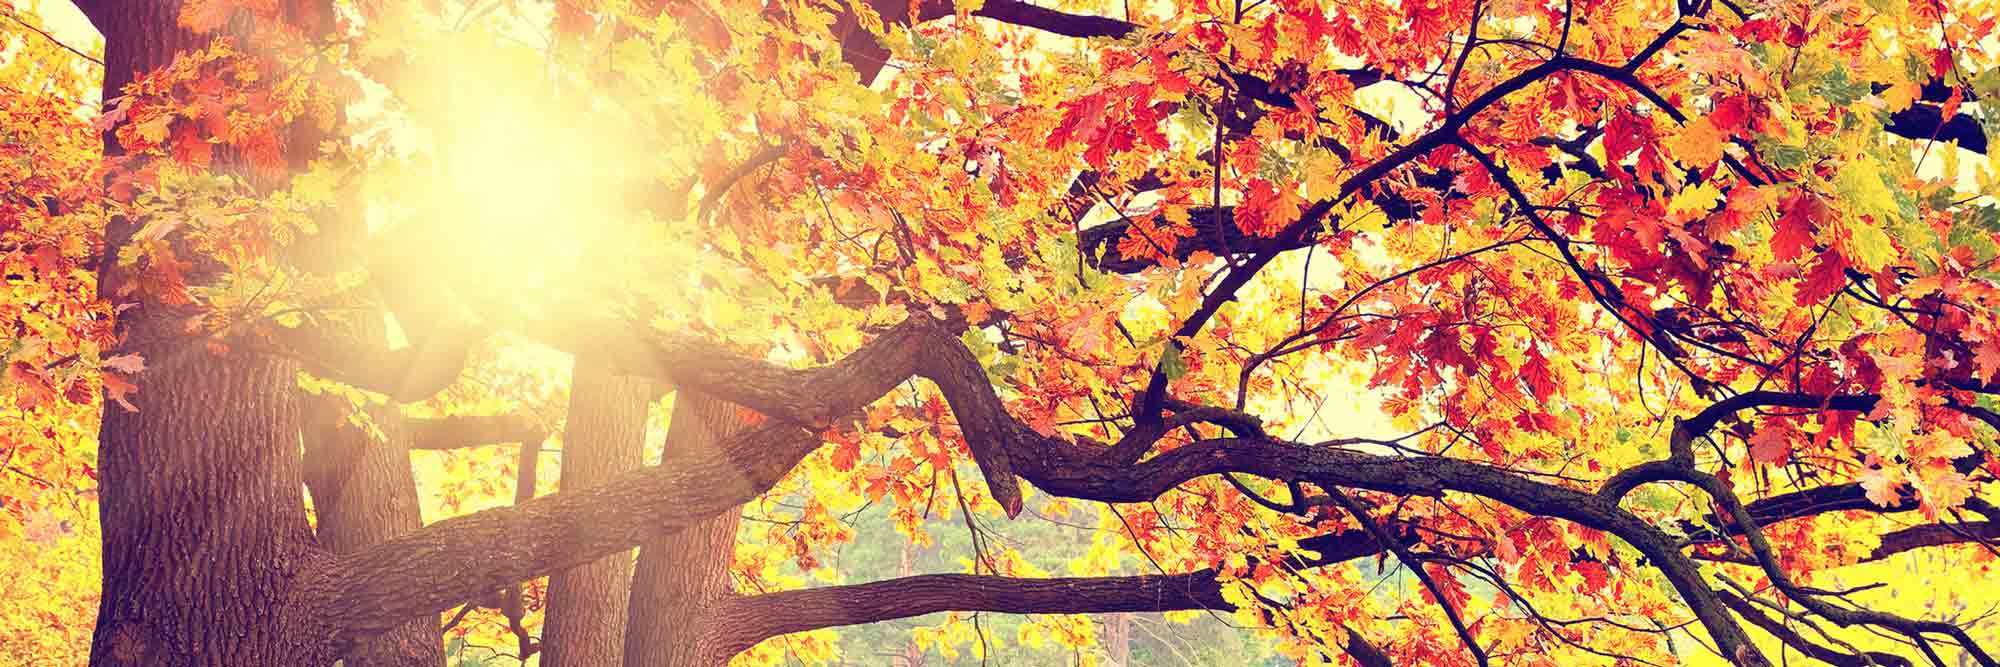 Das Kopfbild der Website: Sonnenlicht fällt durch das herbstlich-bunte Blattwerk eines großen Kastanienbaumes.